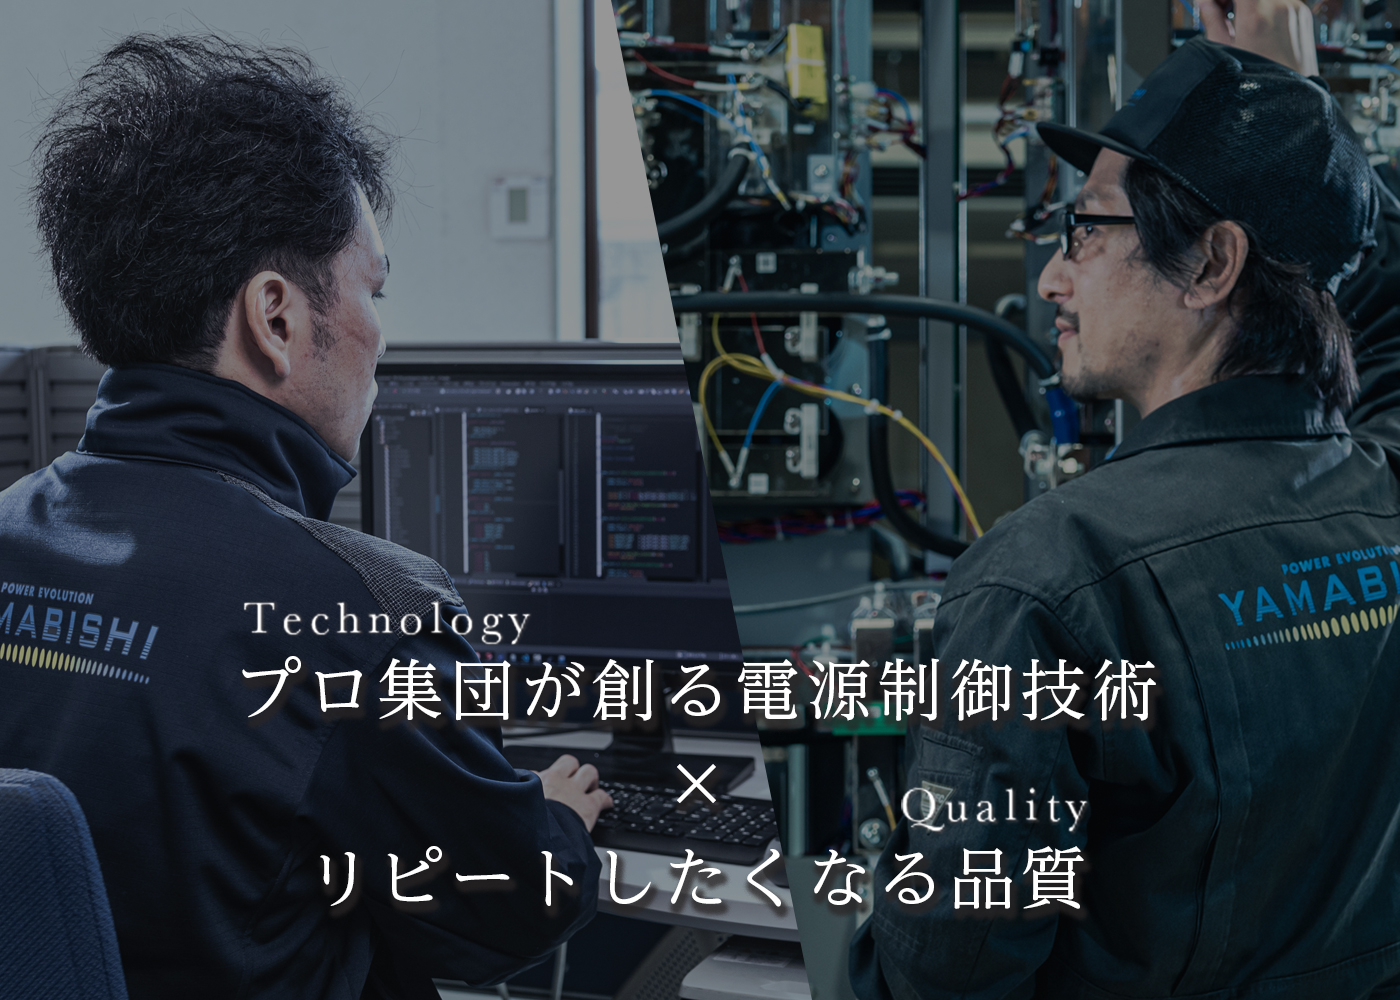 YAMABISHIの技術力と品質